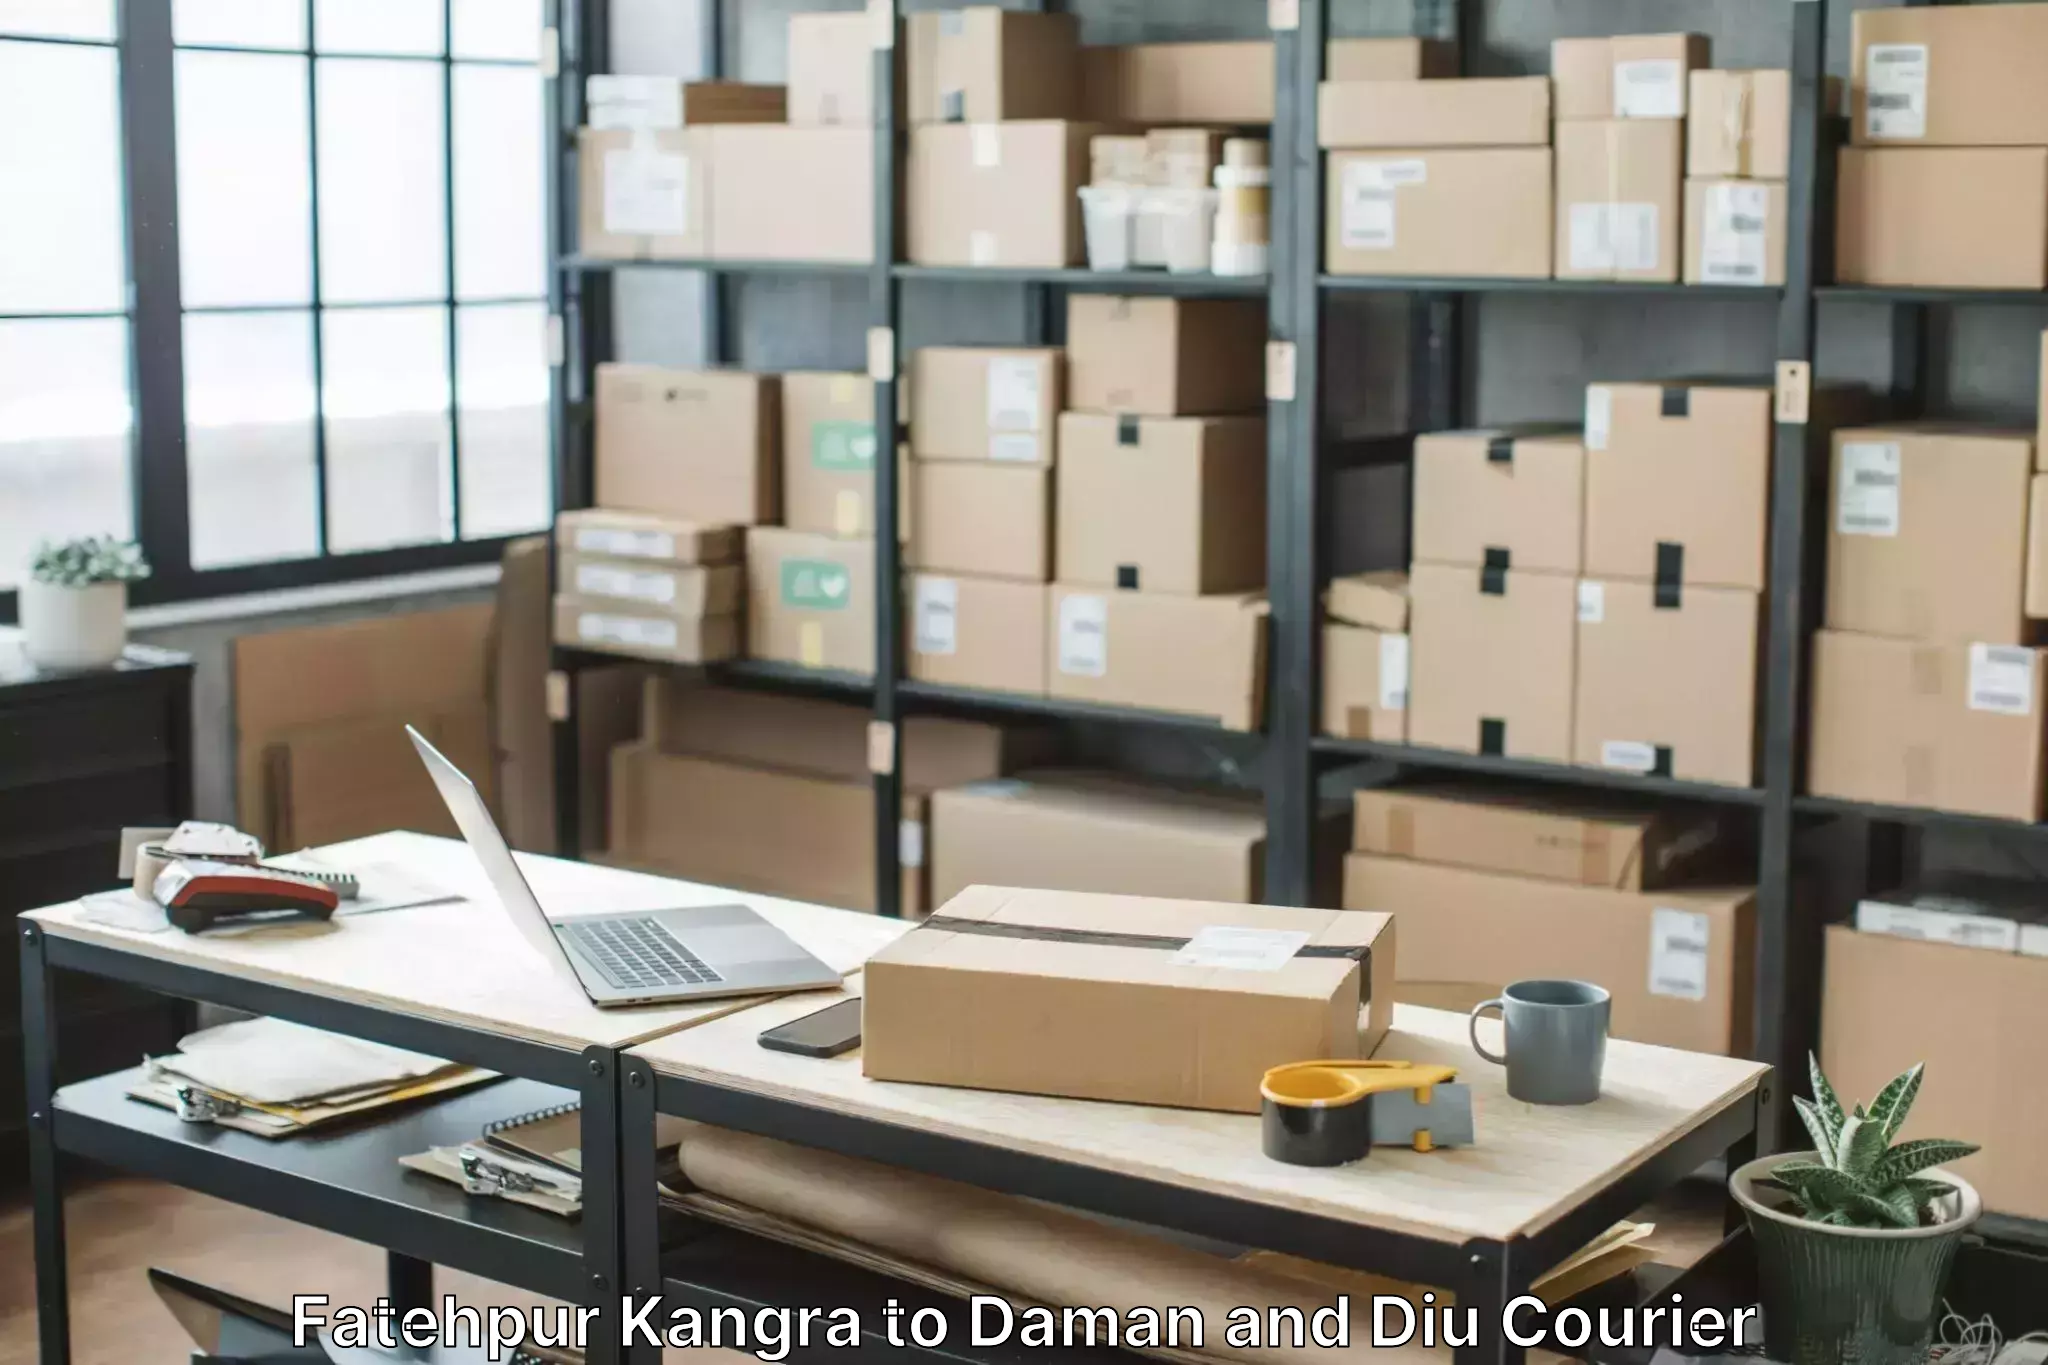 Reliable movers Fatehpur Kangra to Diu